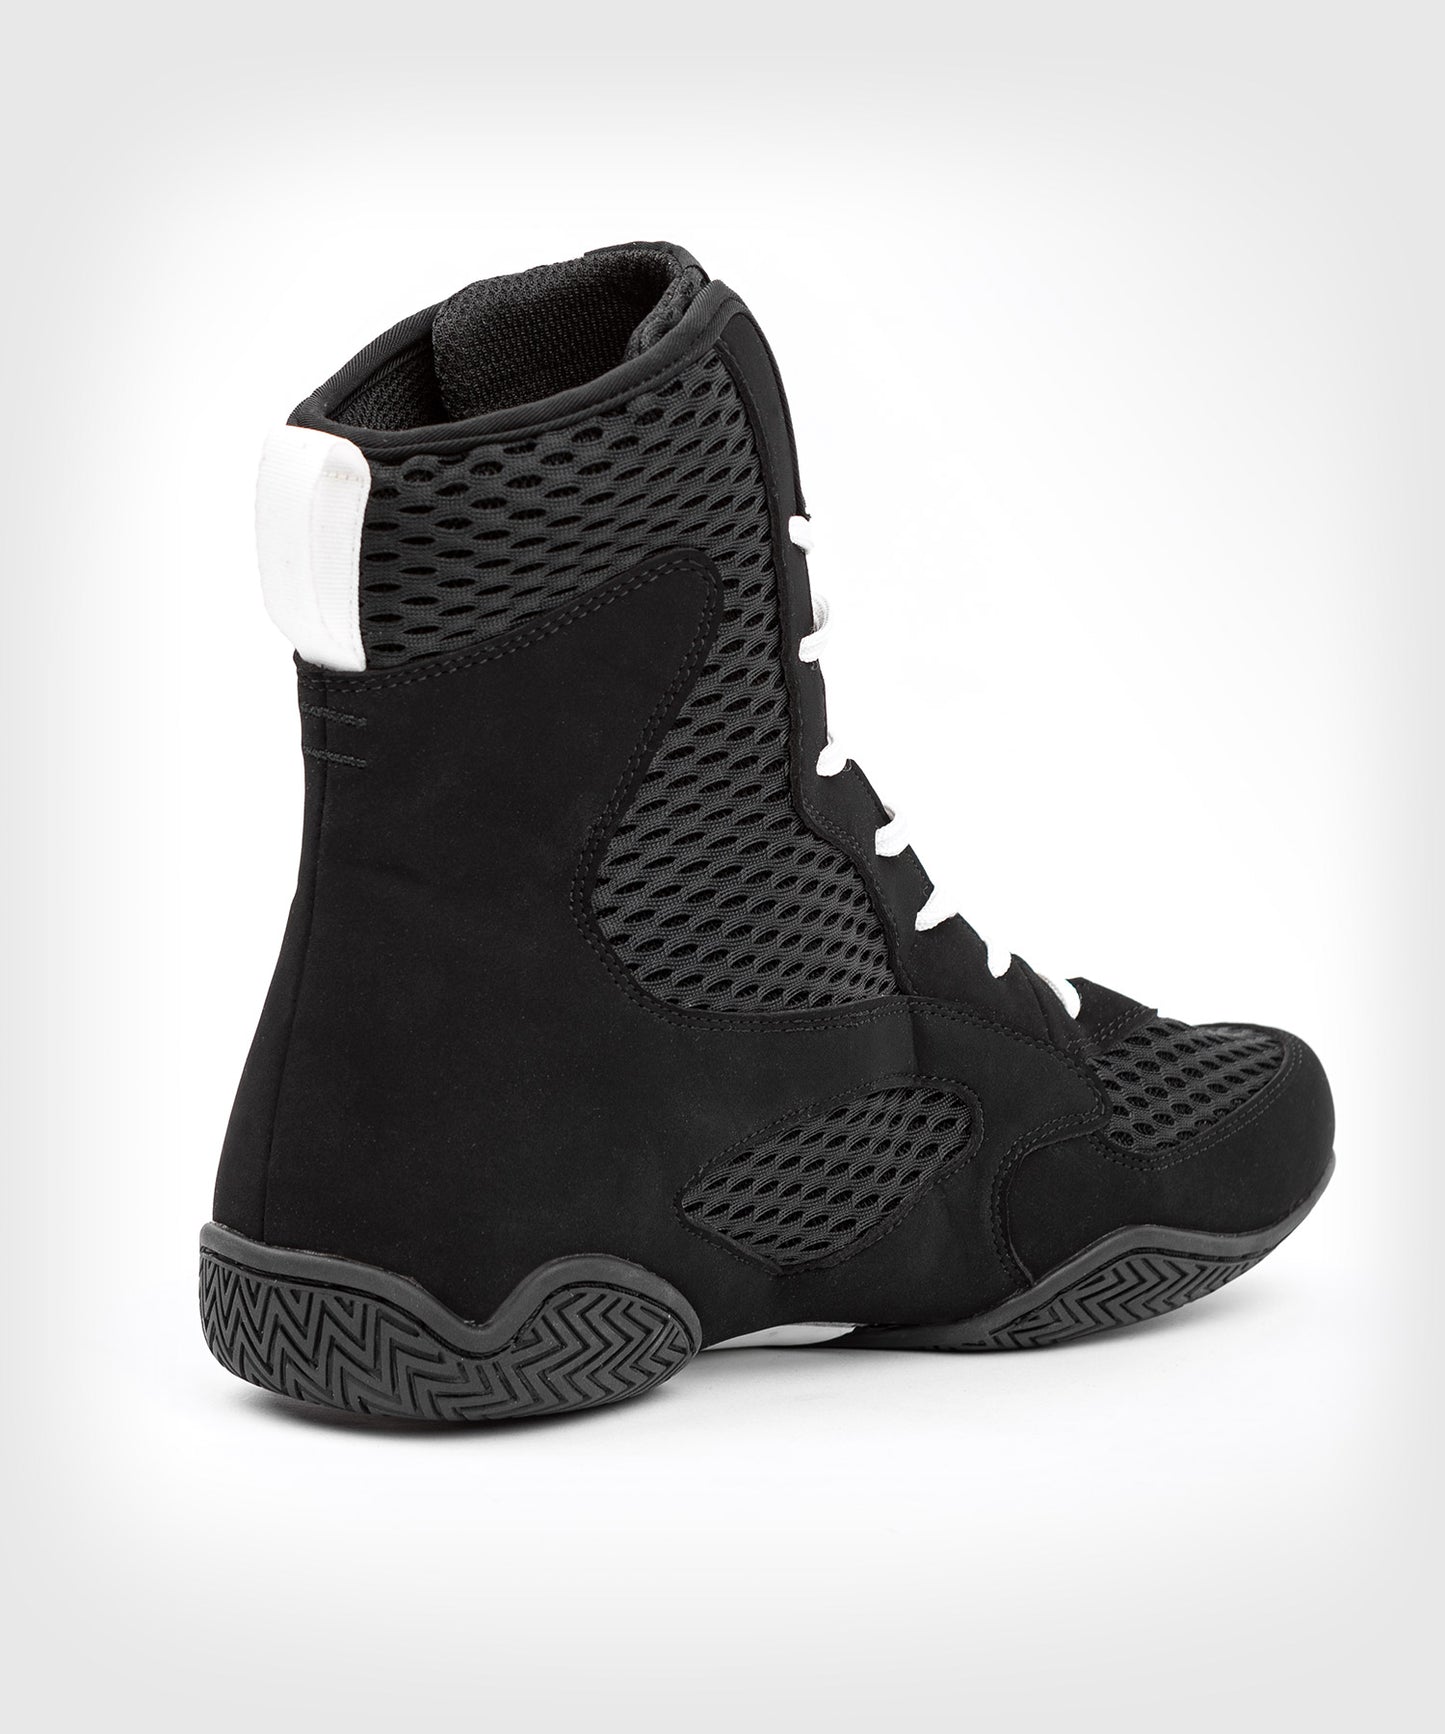 Chaussures de boxe Venum Contender - Noir/Blanc